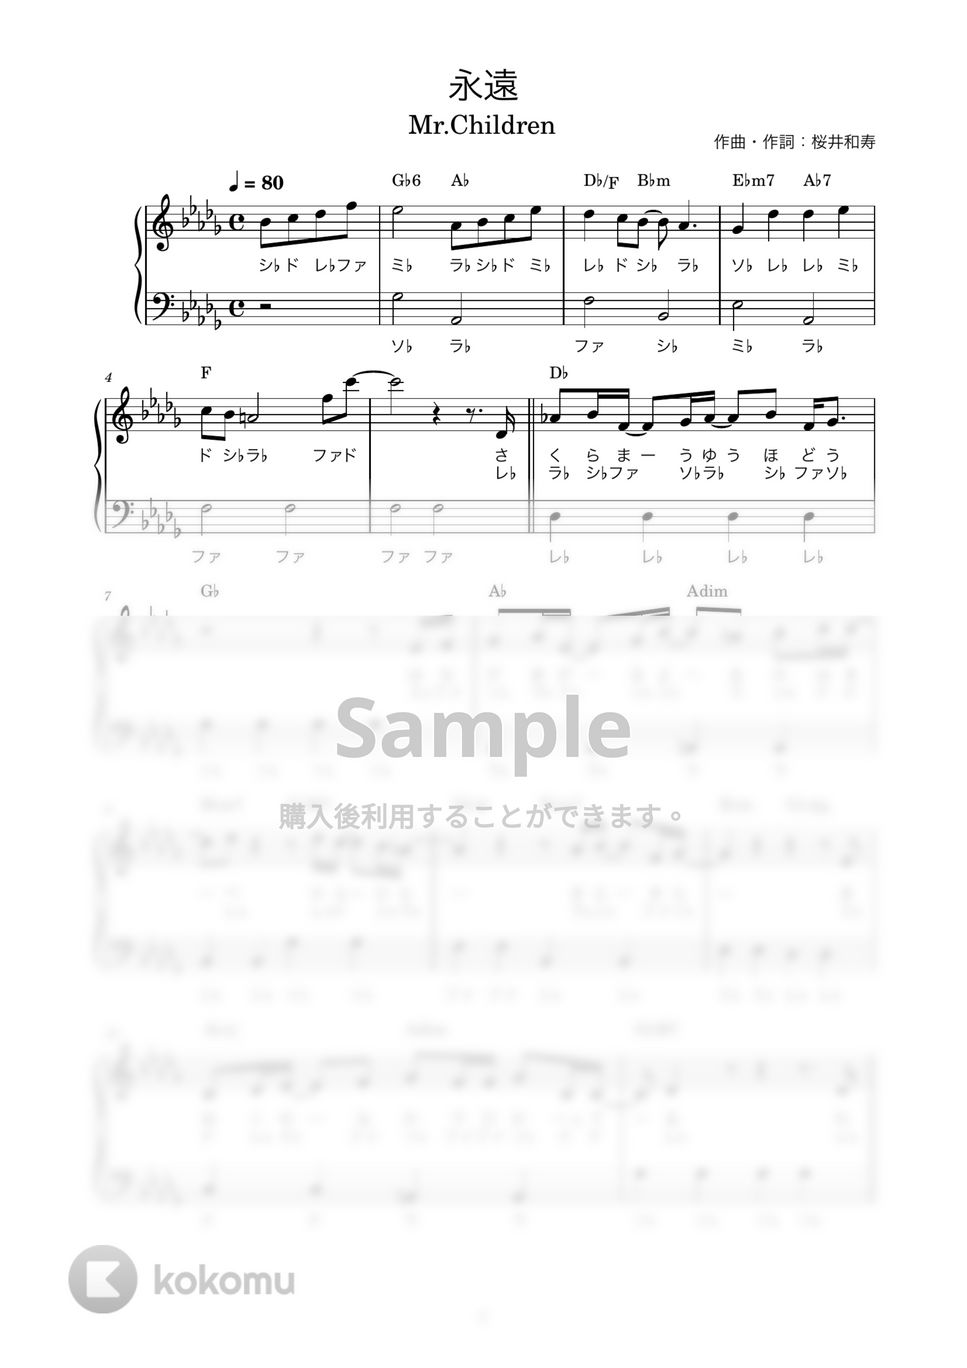 Mr.Children - 永遠 (かんたん / 歌詞付き / ドレミ付き / 初心者) by piano.tokyo